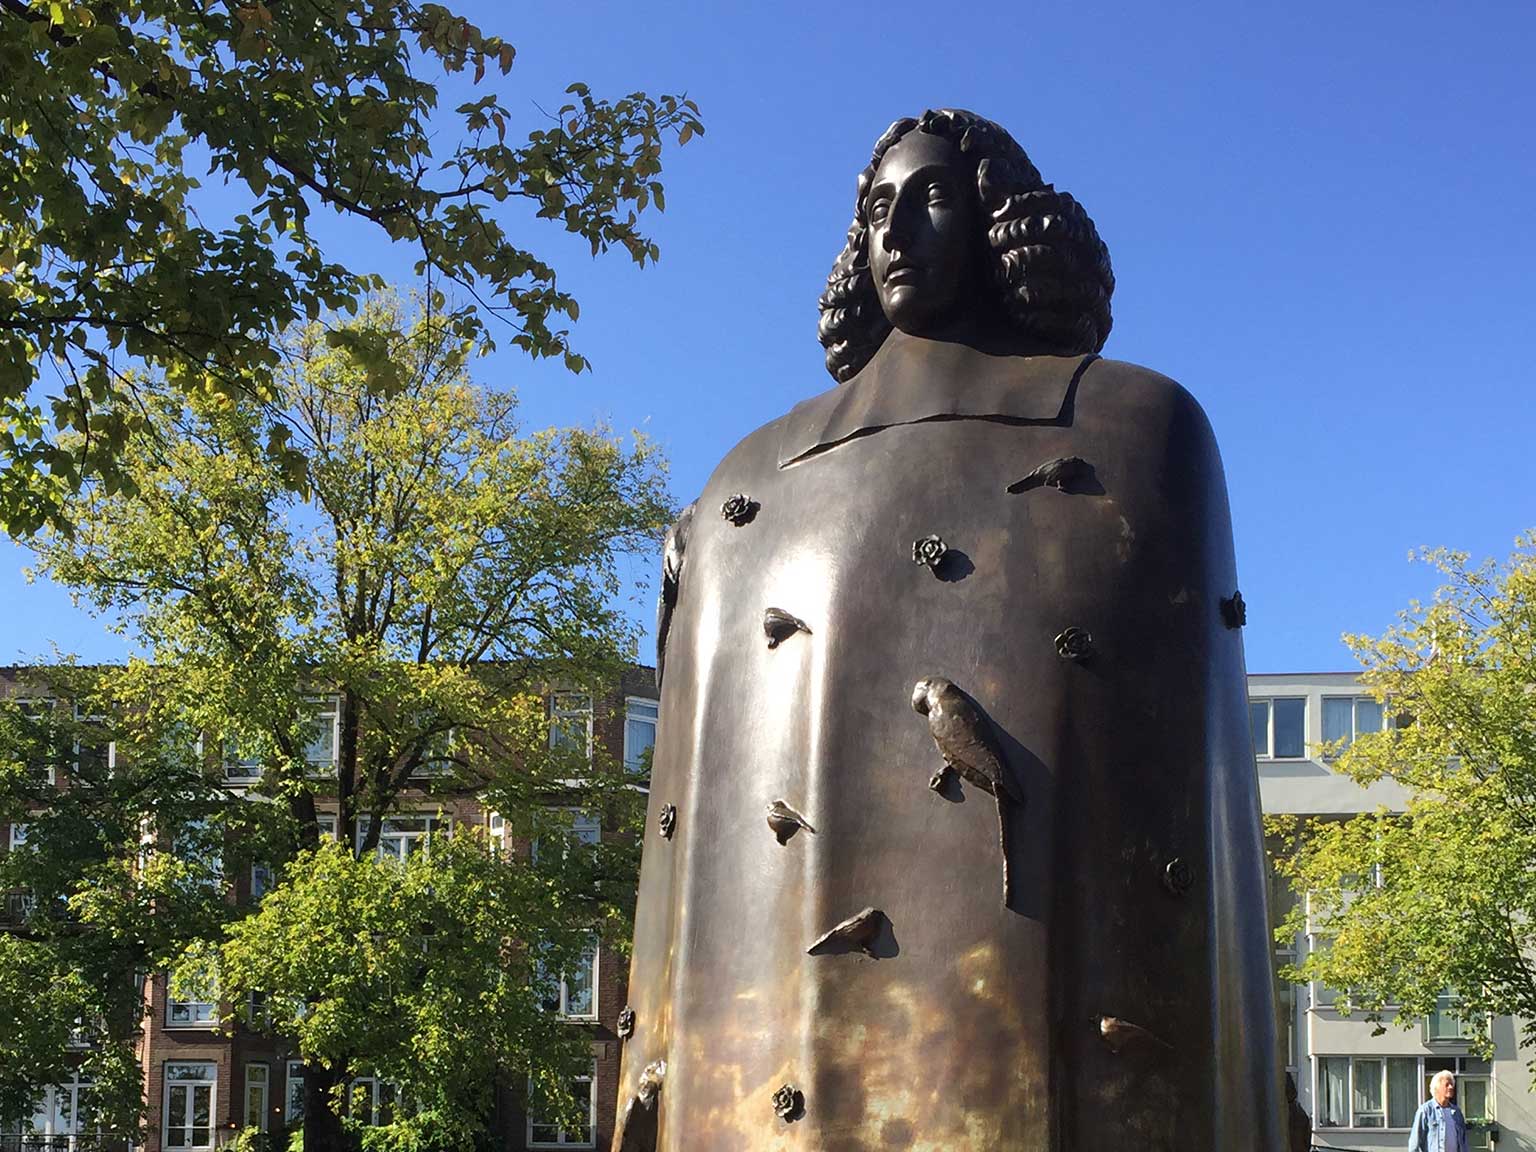 Beeld van Spinoza op de Zwanenburgwal, Amsterdam, van beeldhouwer Nicolas Dings